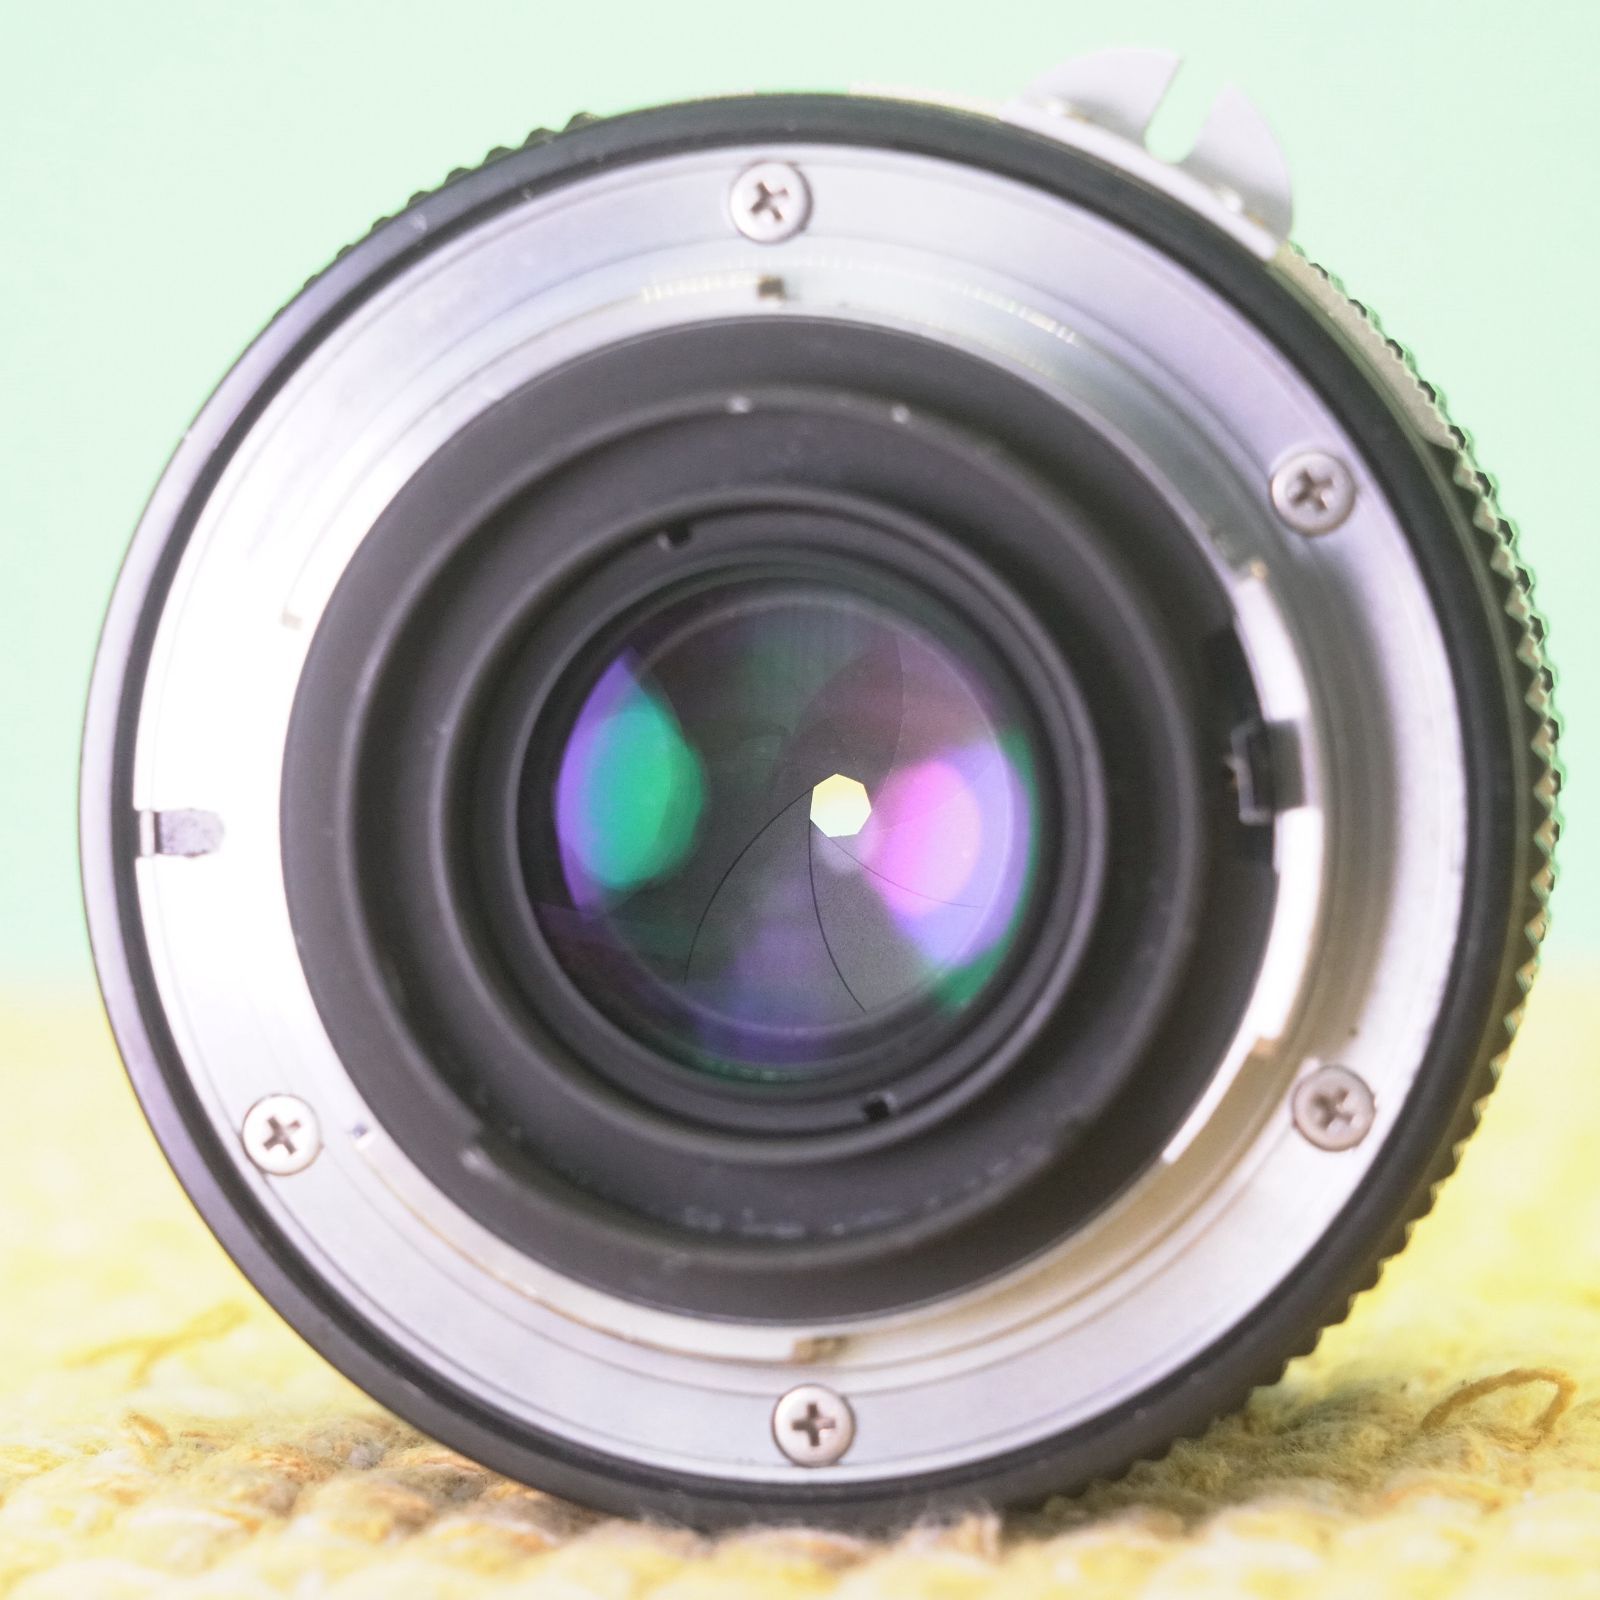 ニコン New Nikkor 24mm f2.8 非Ai オールドレンズ #06 - カメラのしゃ